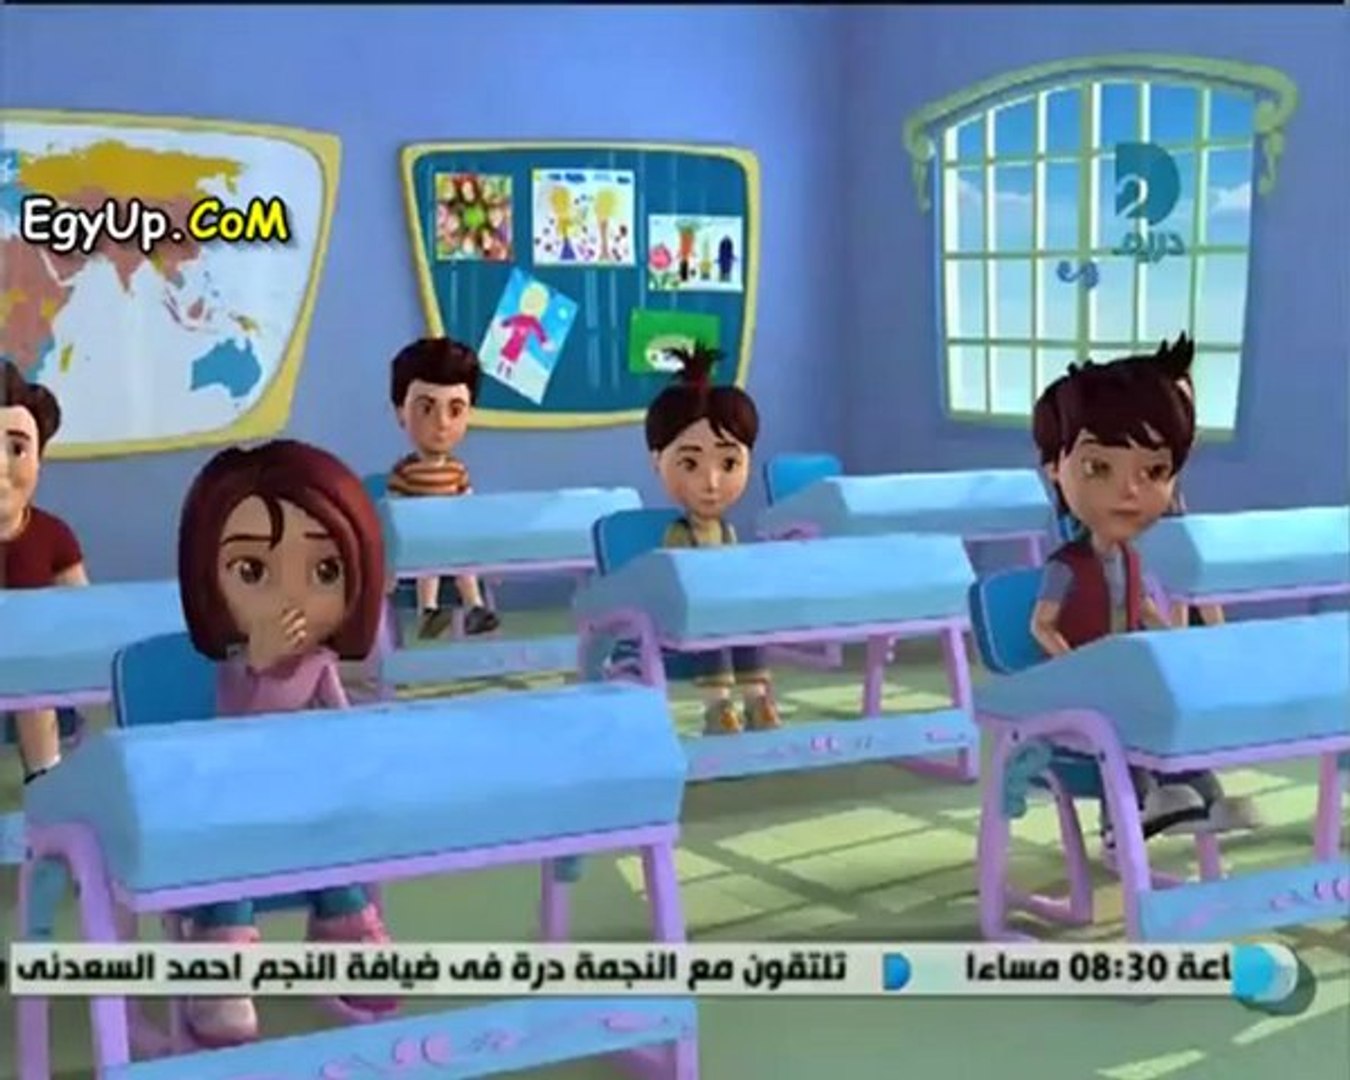 عصام والمصباح رمضان 2012 الحلقة 25 - video Dailymotion